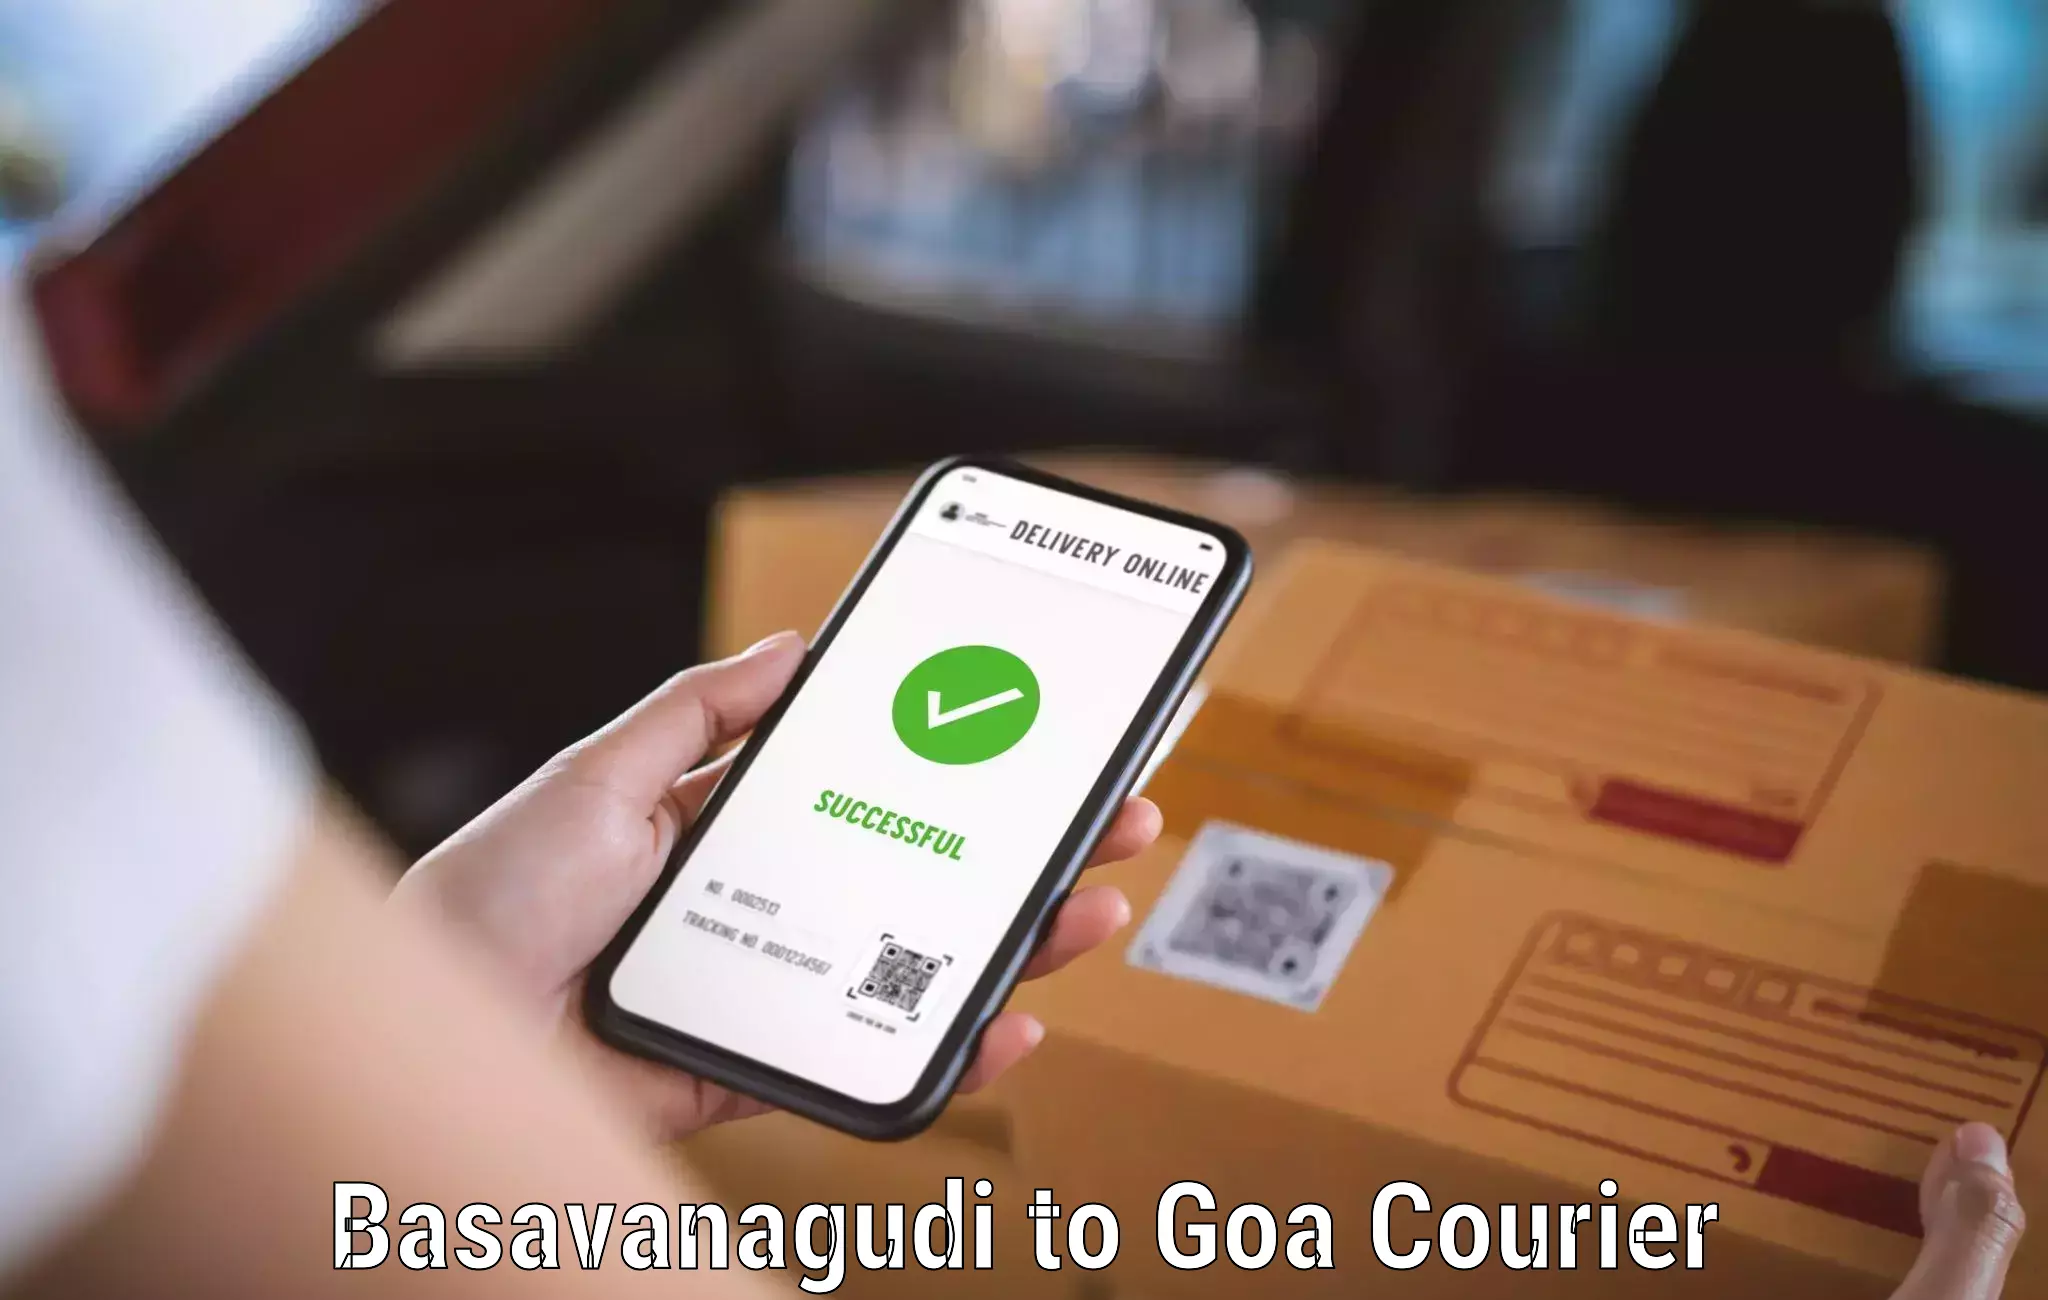 Premium delivery services Basavanagudi to South Goa